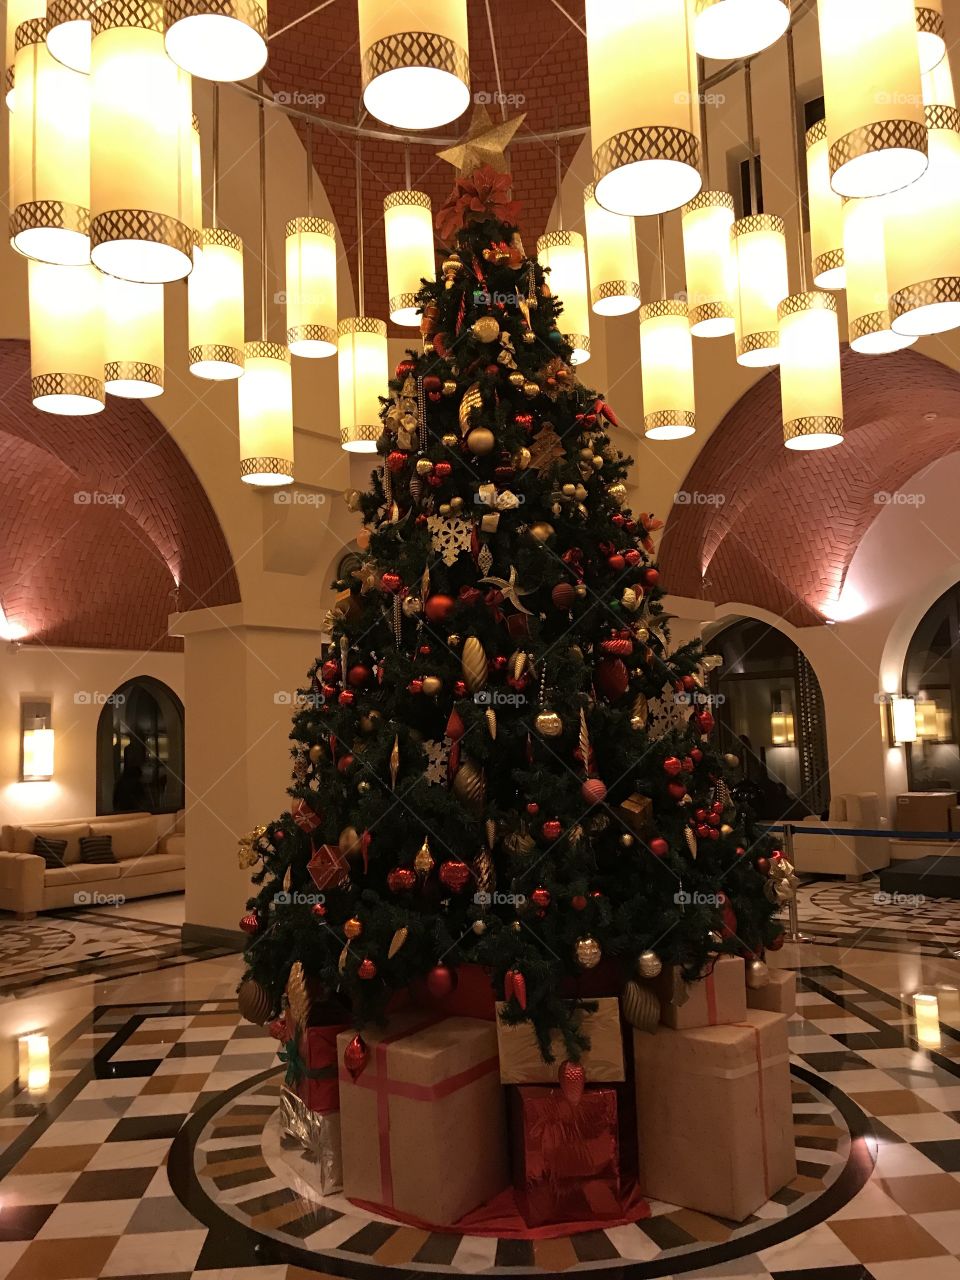 Pretty pic of Big Christmas tree